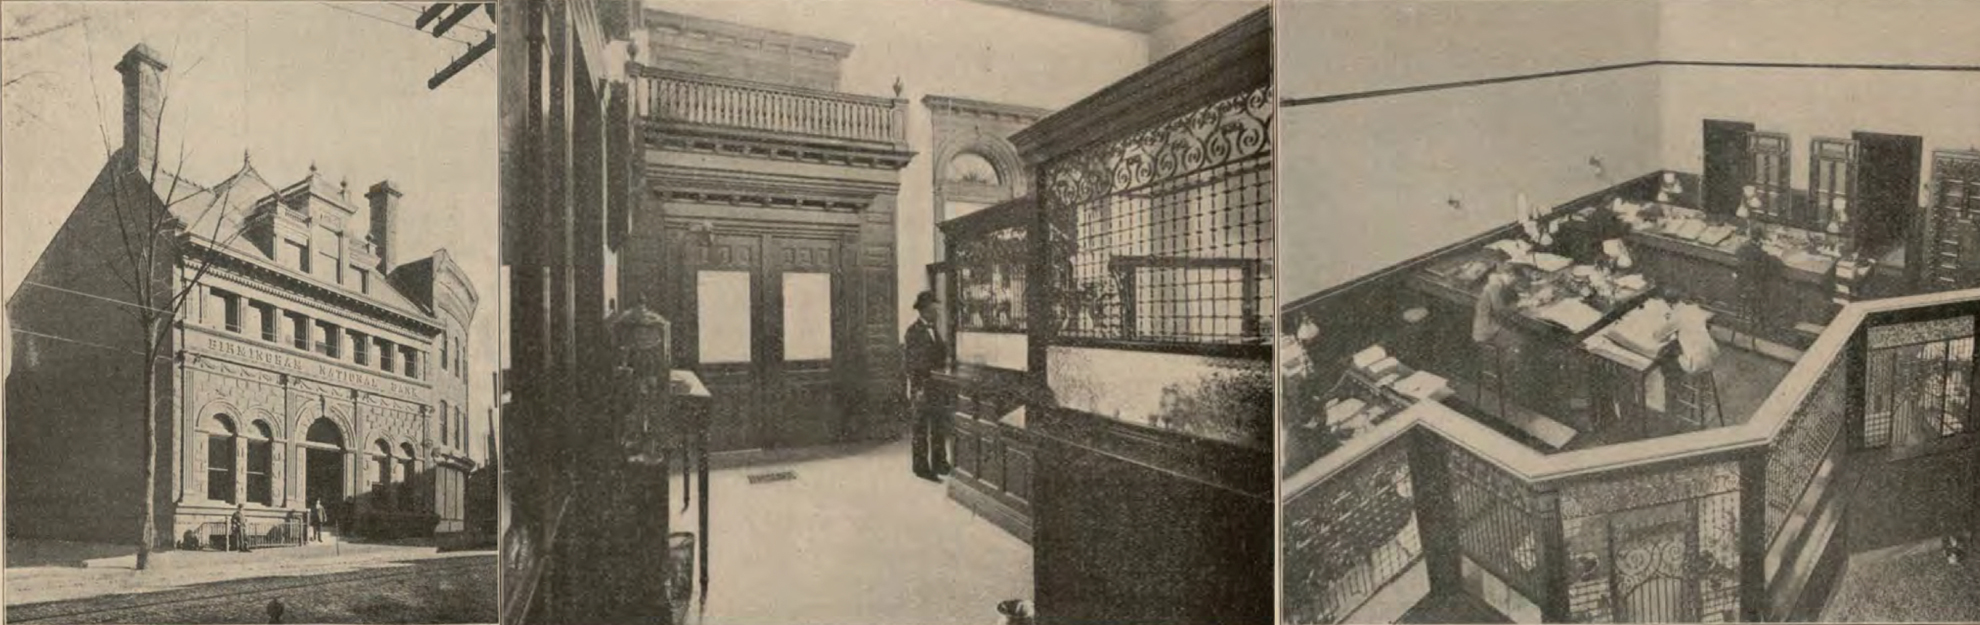 historic pics of birmingham bank